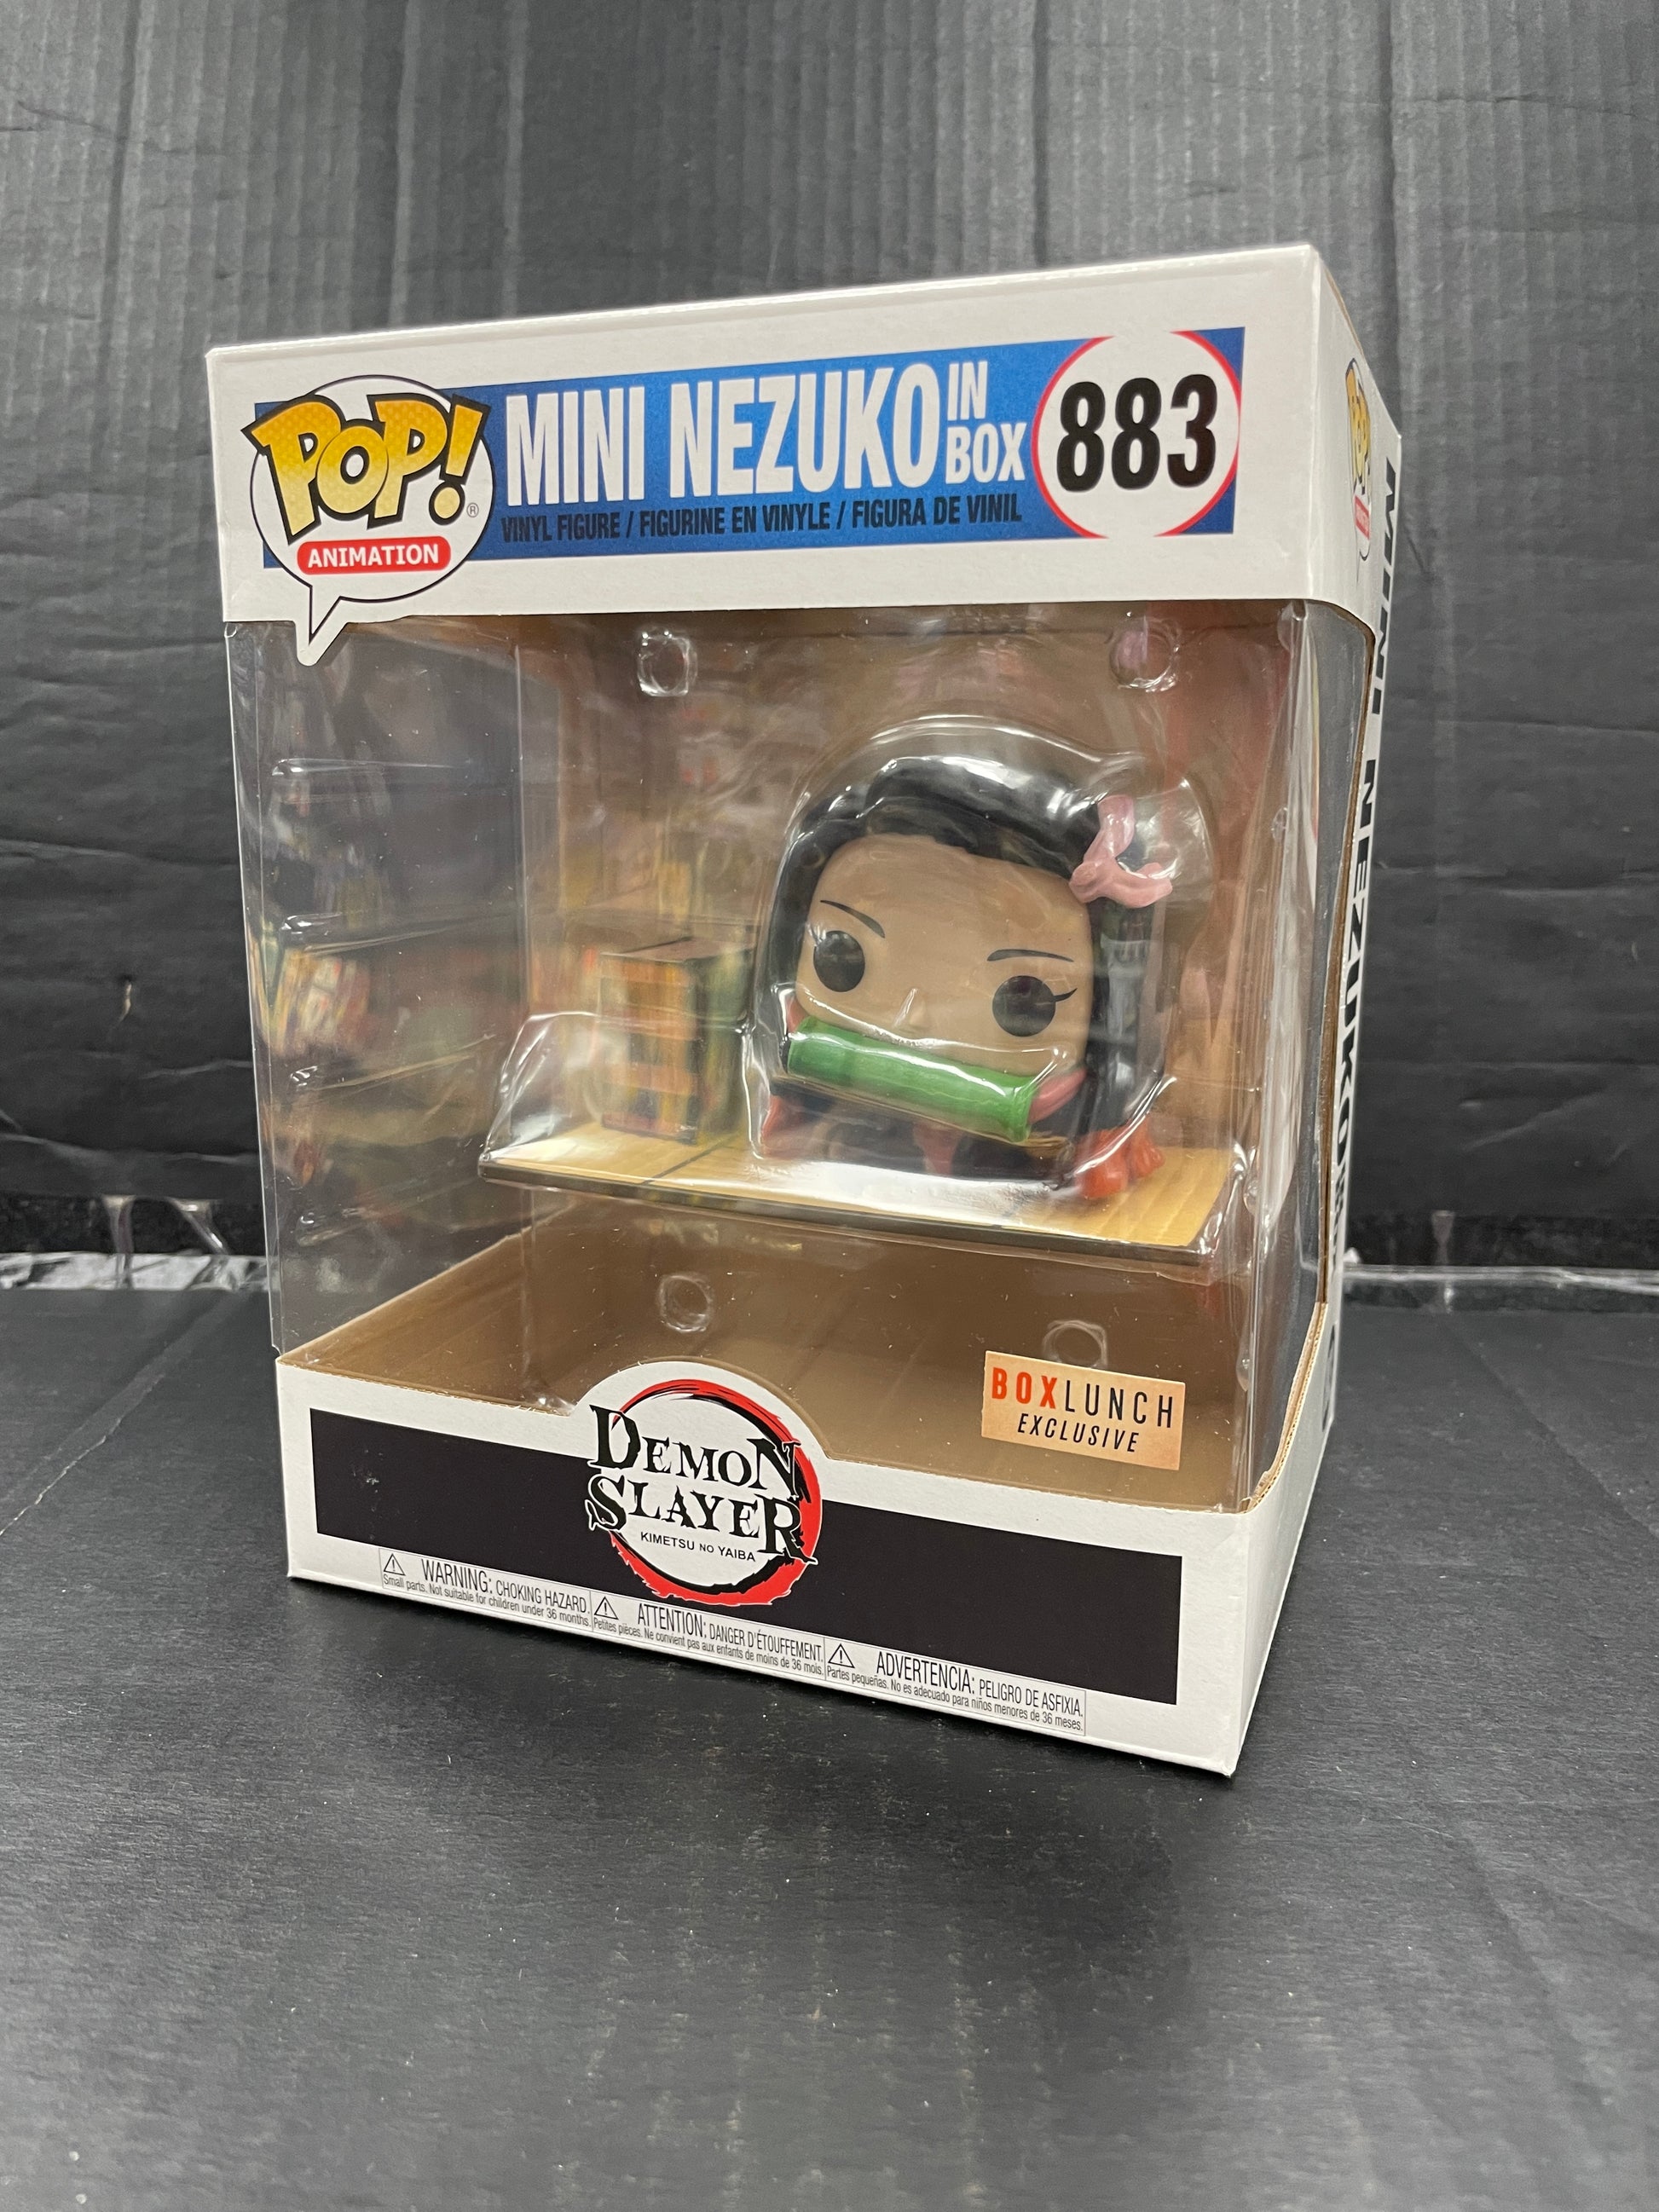 Funko Pop! Animation Demon Slayer Mini Nezuko in Box 883 Box Lunch